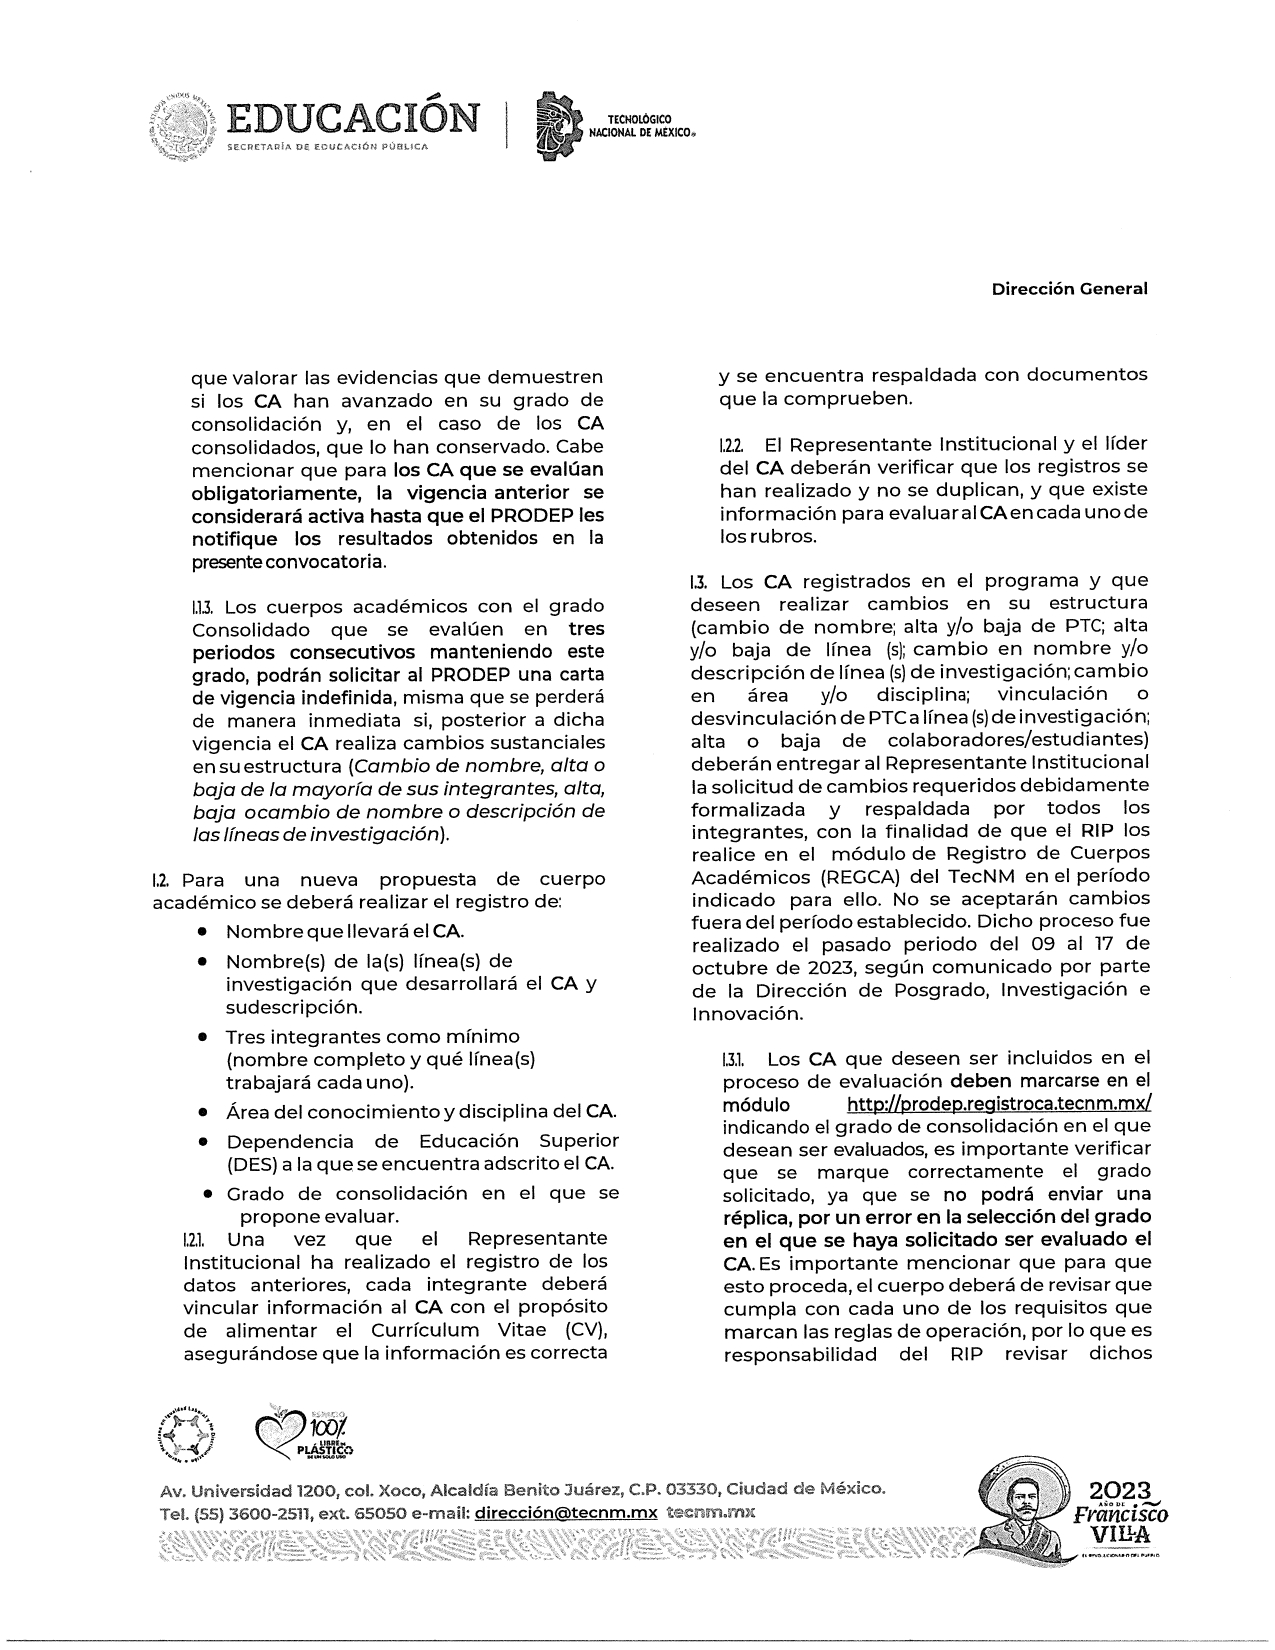 Registro_y_Evaluación_de_Cuerpos_Académicos_2023_page-0002.jpg